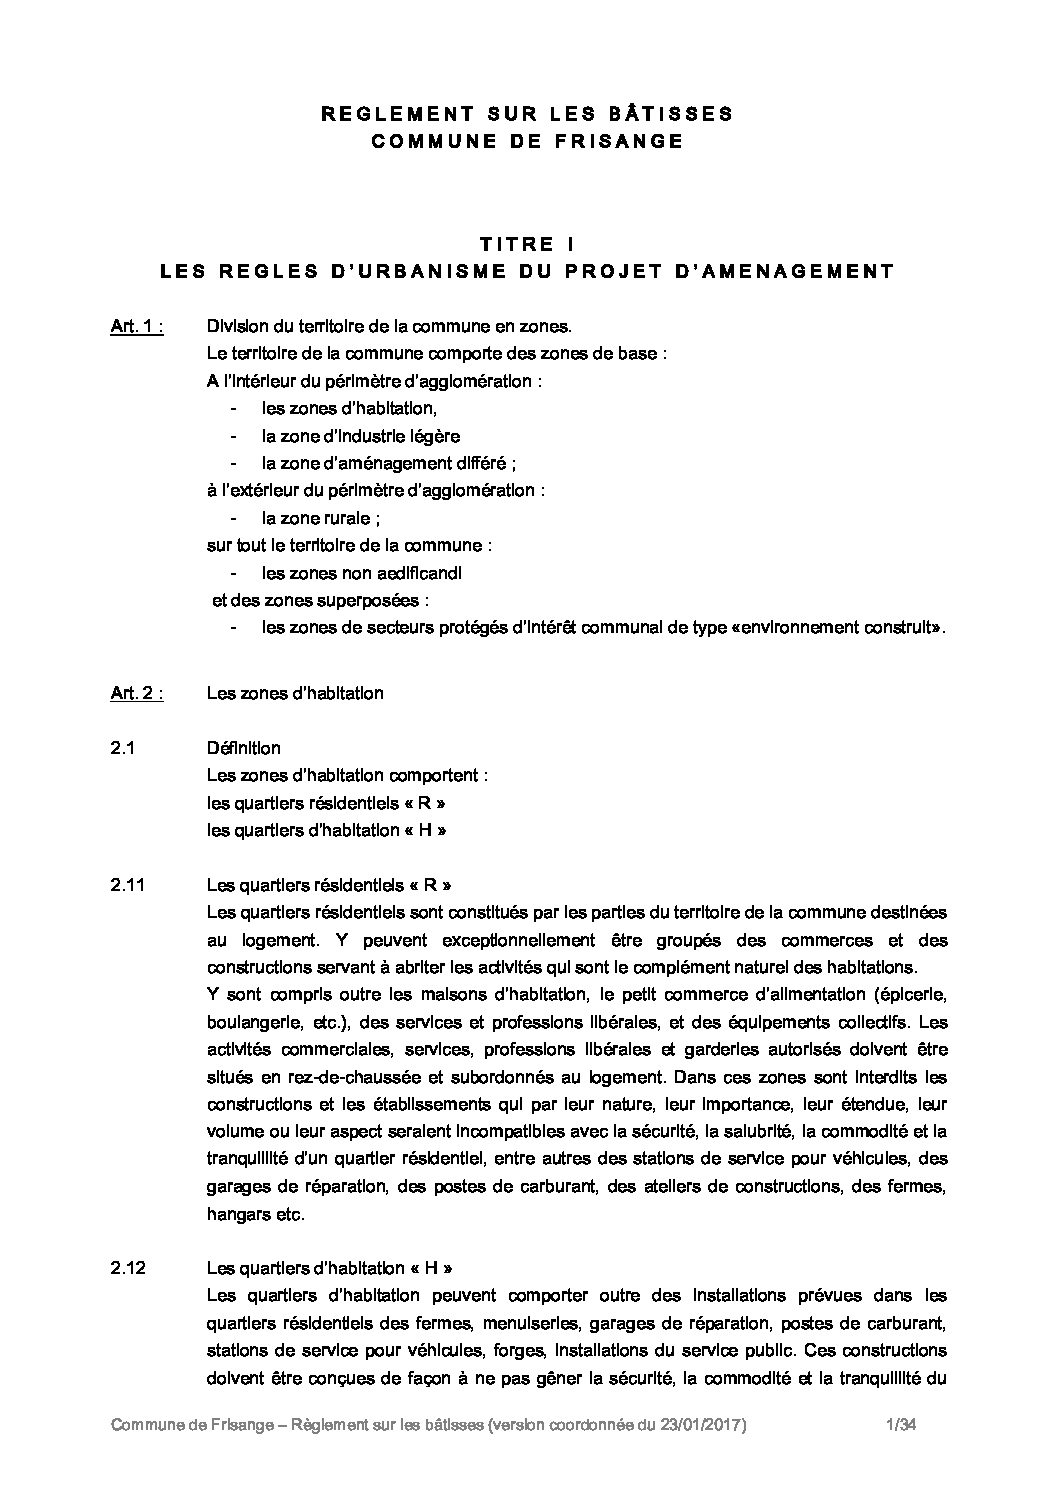 Règlement sur les bâtisses de la Commune de Frisange -version coordonnée 2018 (1)